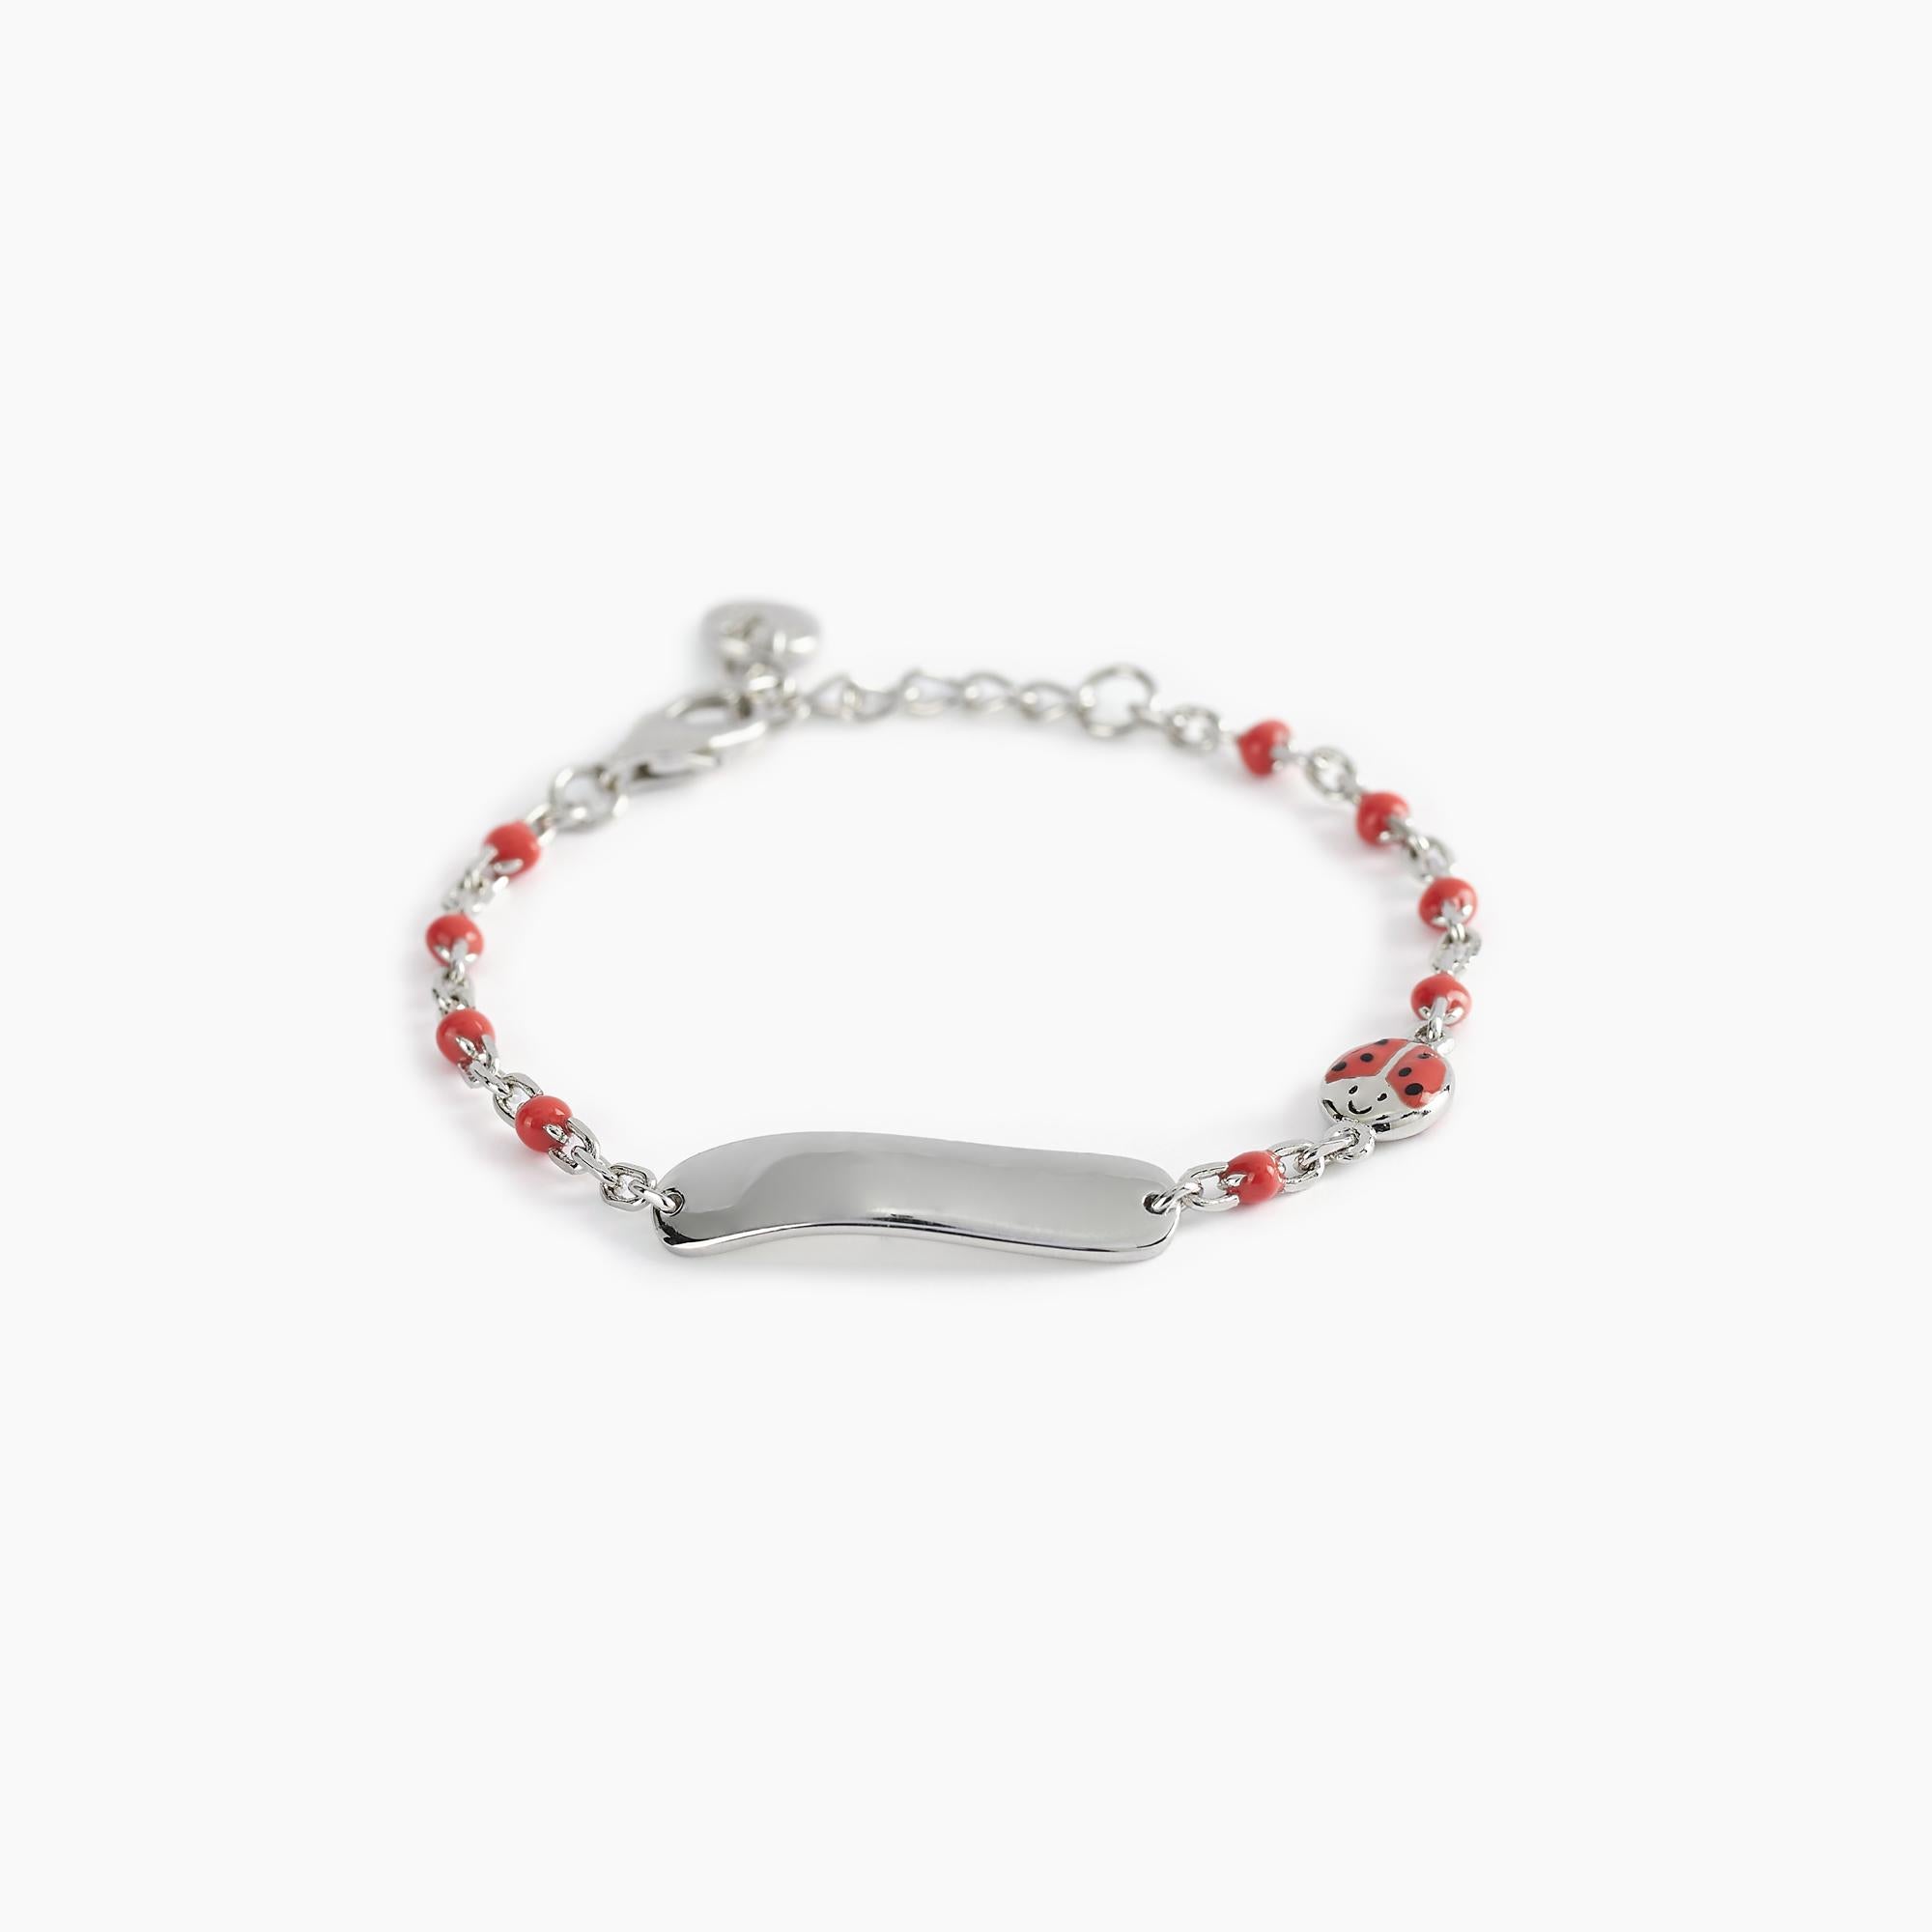 Mabina Junior - Bracelet with ladybug and engraveable tag LADYBUG-TAG - 533498